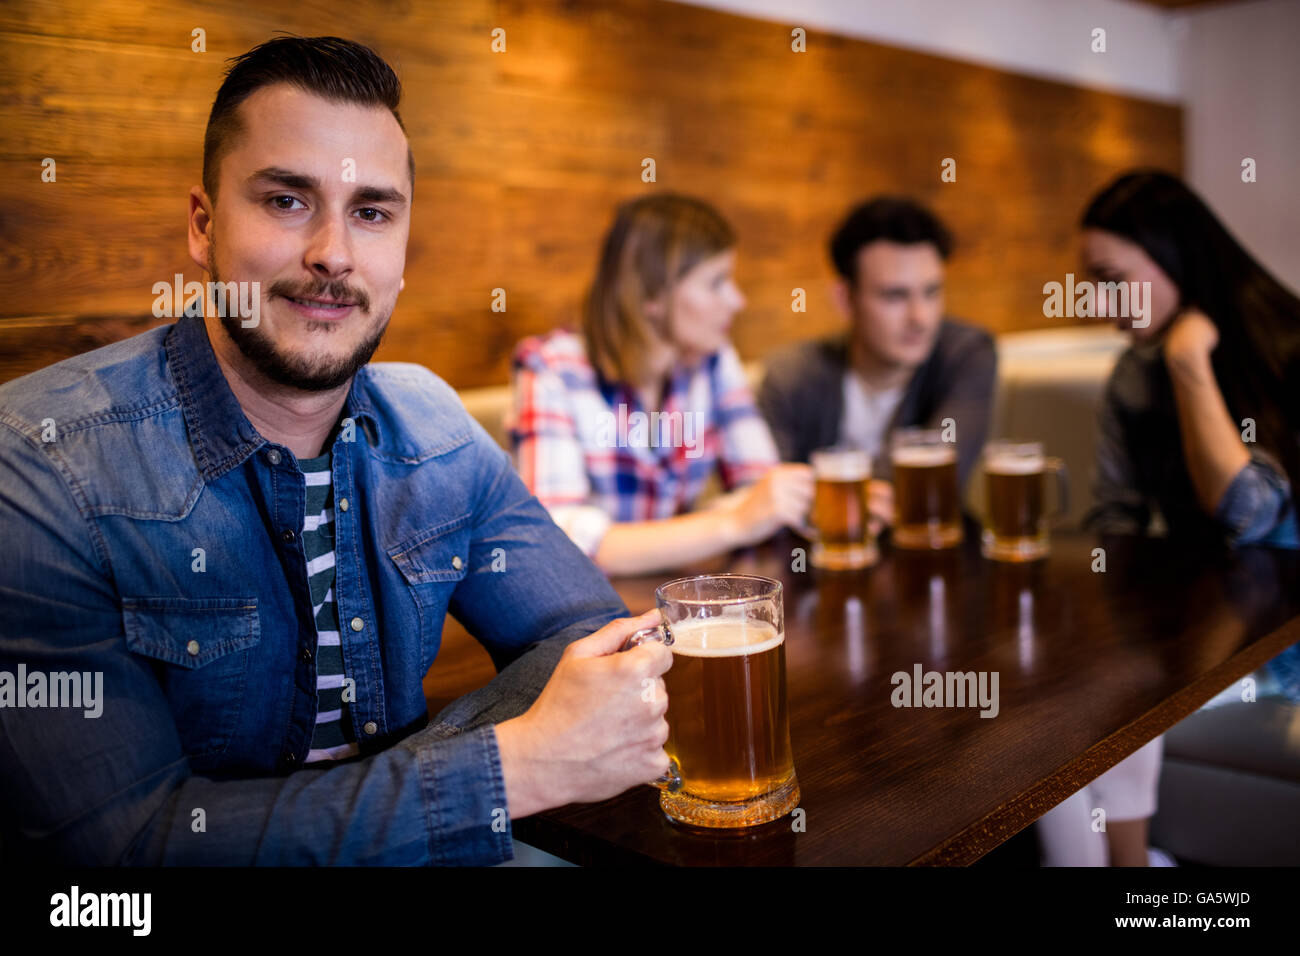 Uomo con boccale di birra mentre gli amici in background Foto Stock